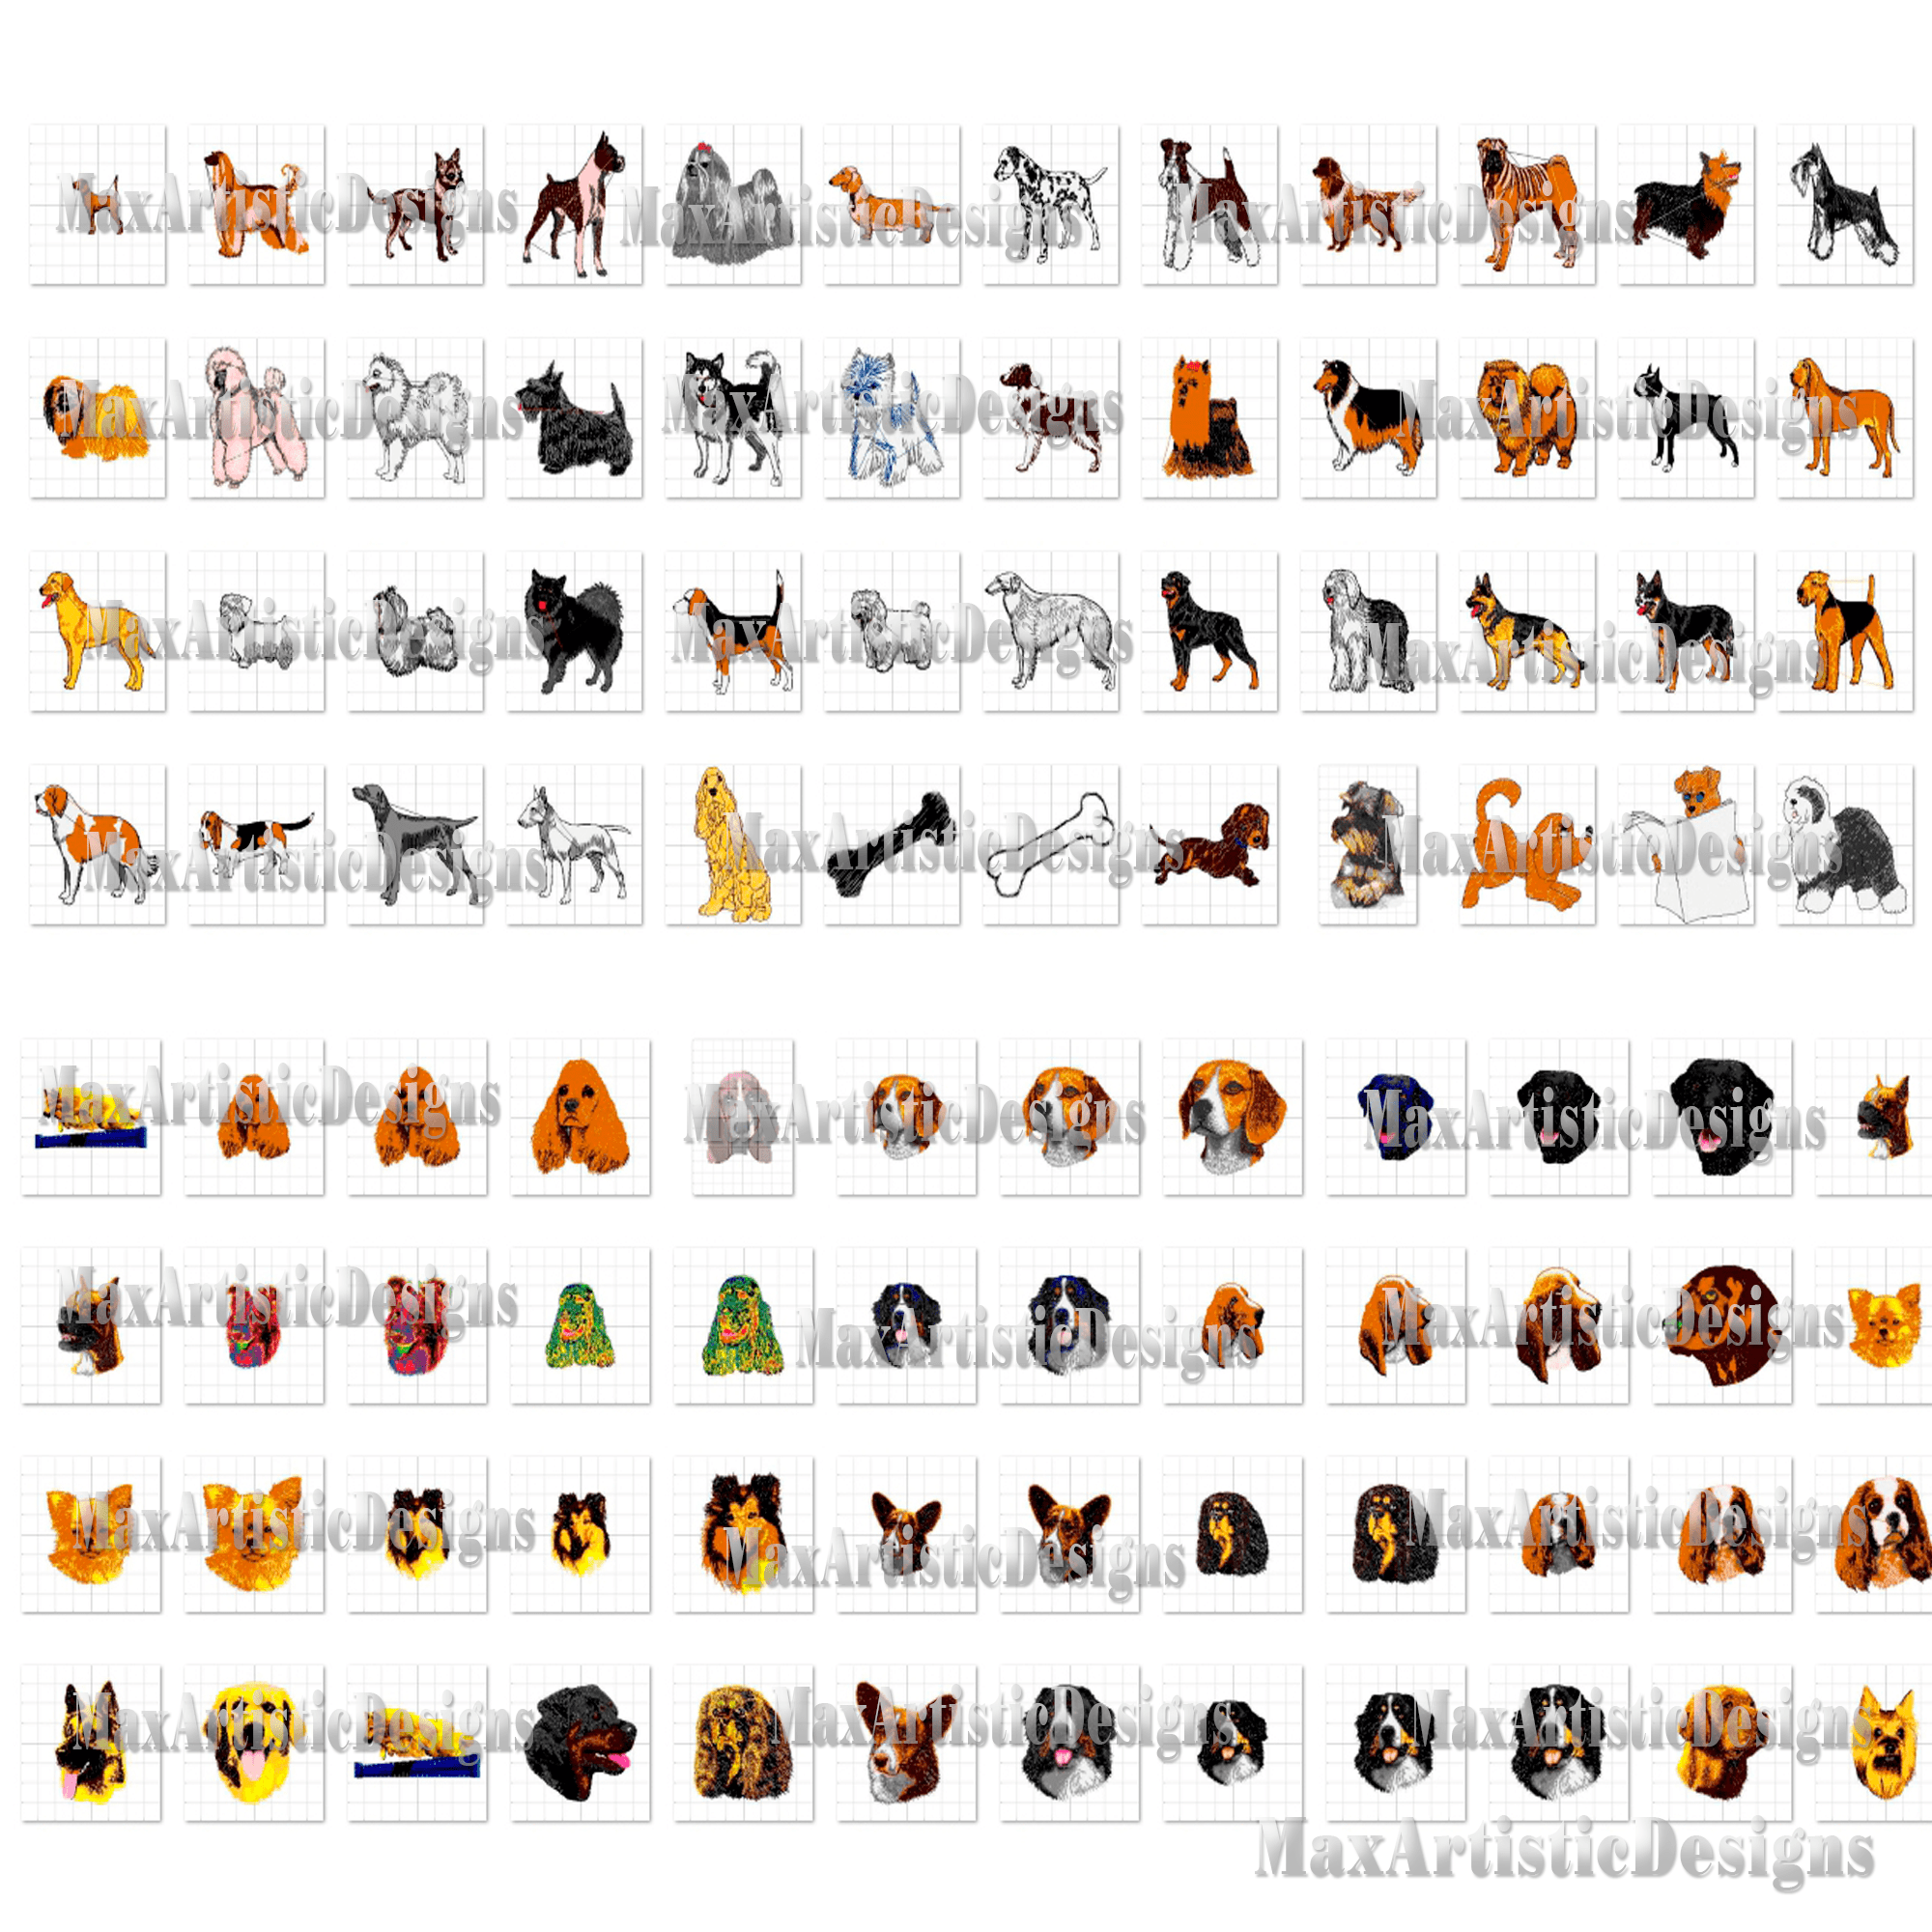 méga collection avec 160 000 motifs de broderie et autres fichiers de motifs en téléchargement numérique